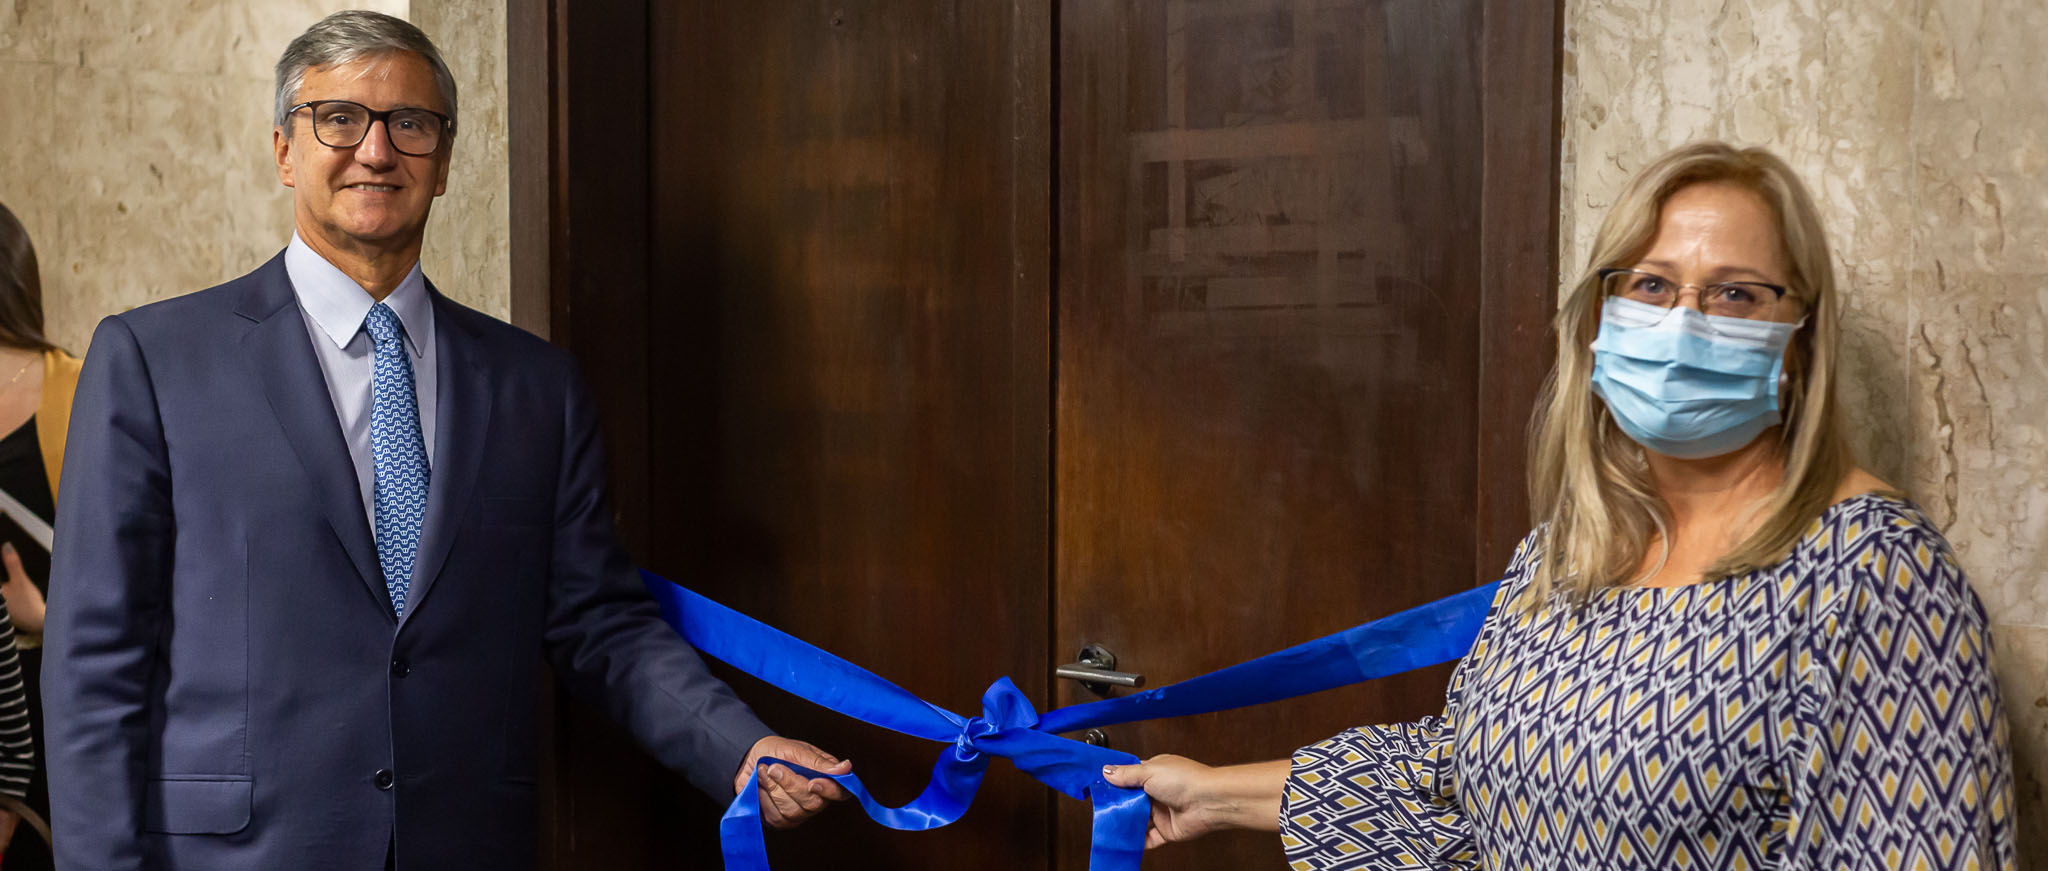 O presidente do TJRJ, desembargador Henrique Figueira, e a juíza Gisele Guida seguram faixa azul com laço de inauguração em frente à porta da nova vara